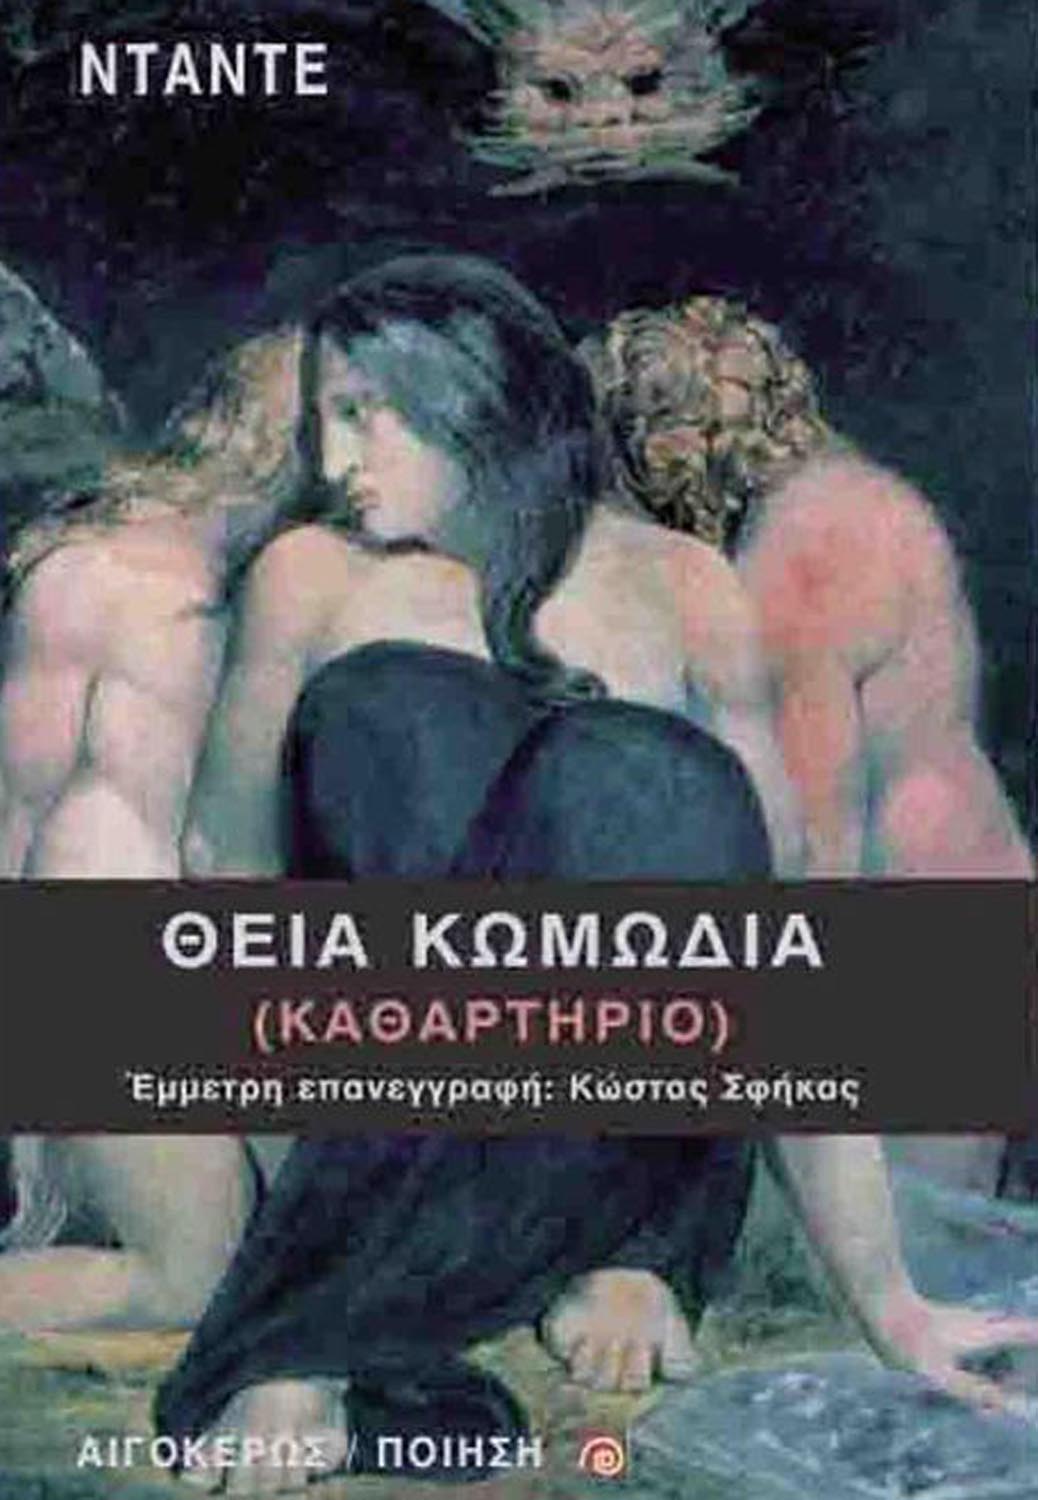 2021, Σφήκας, Κώστας, 1927-2009 (Sfikas, Kostas), Θεία κωμωδία, Καθαρτήριο, Dante Alighieri, 1265-1321, Αιγόκερως